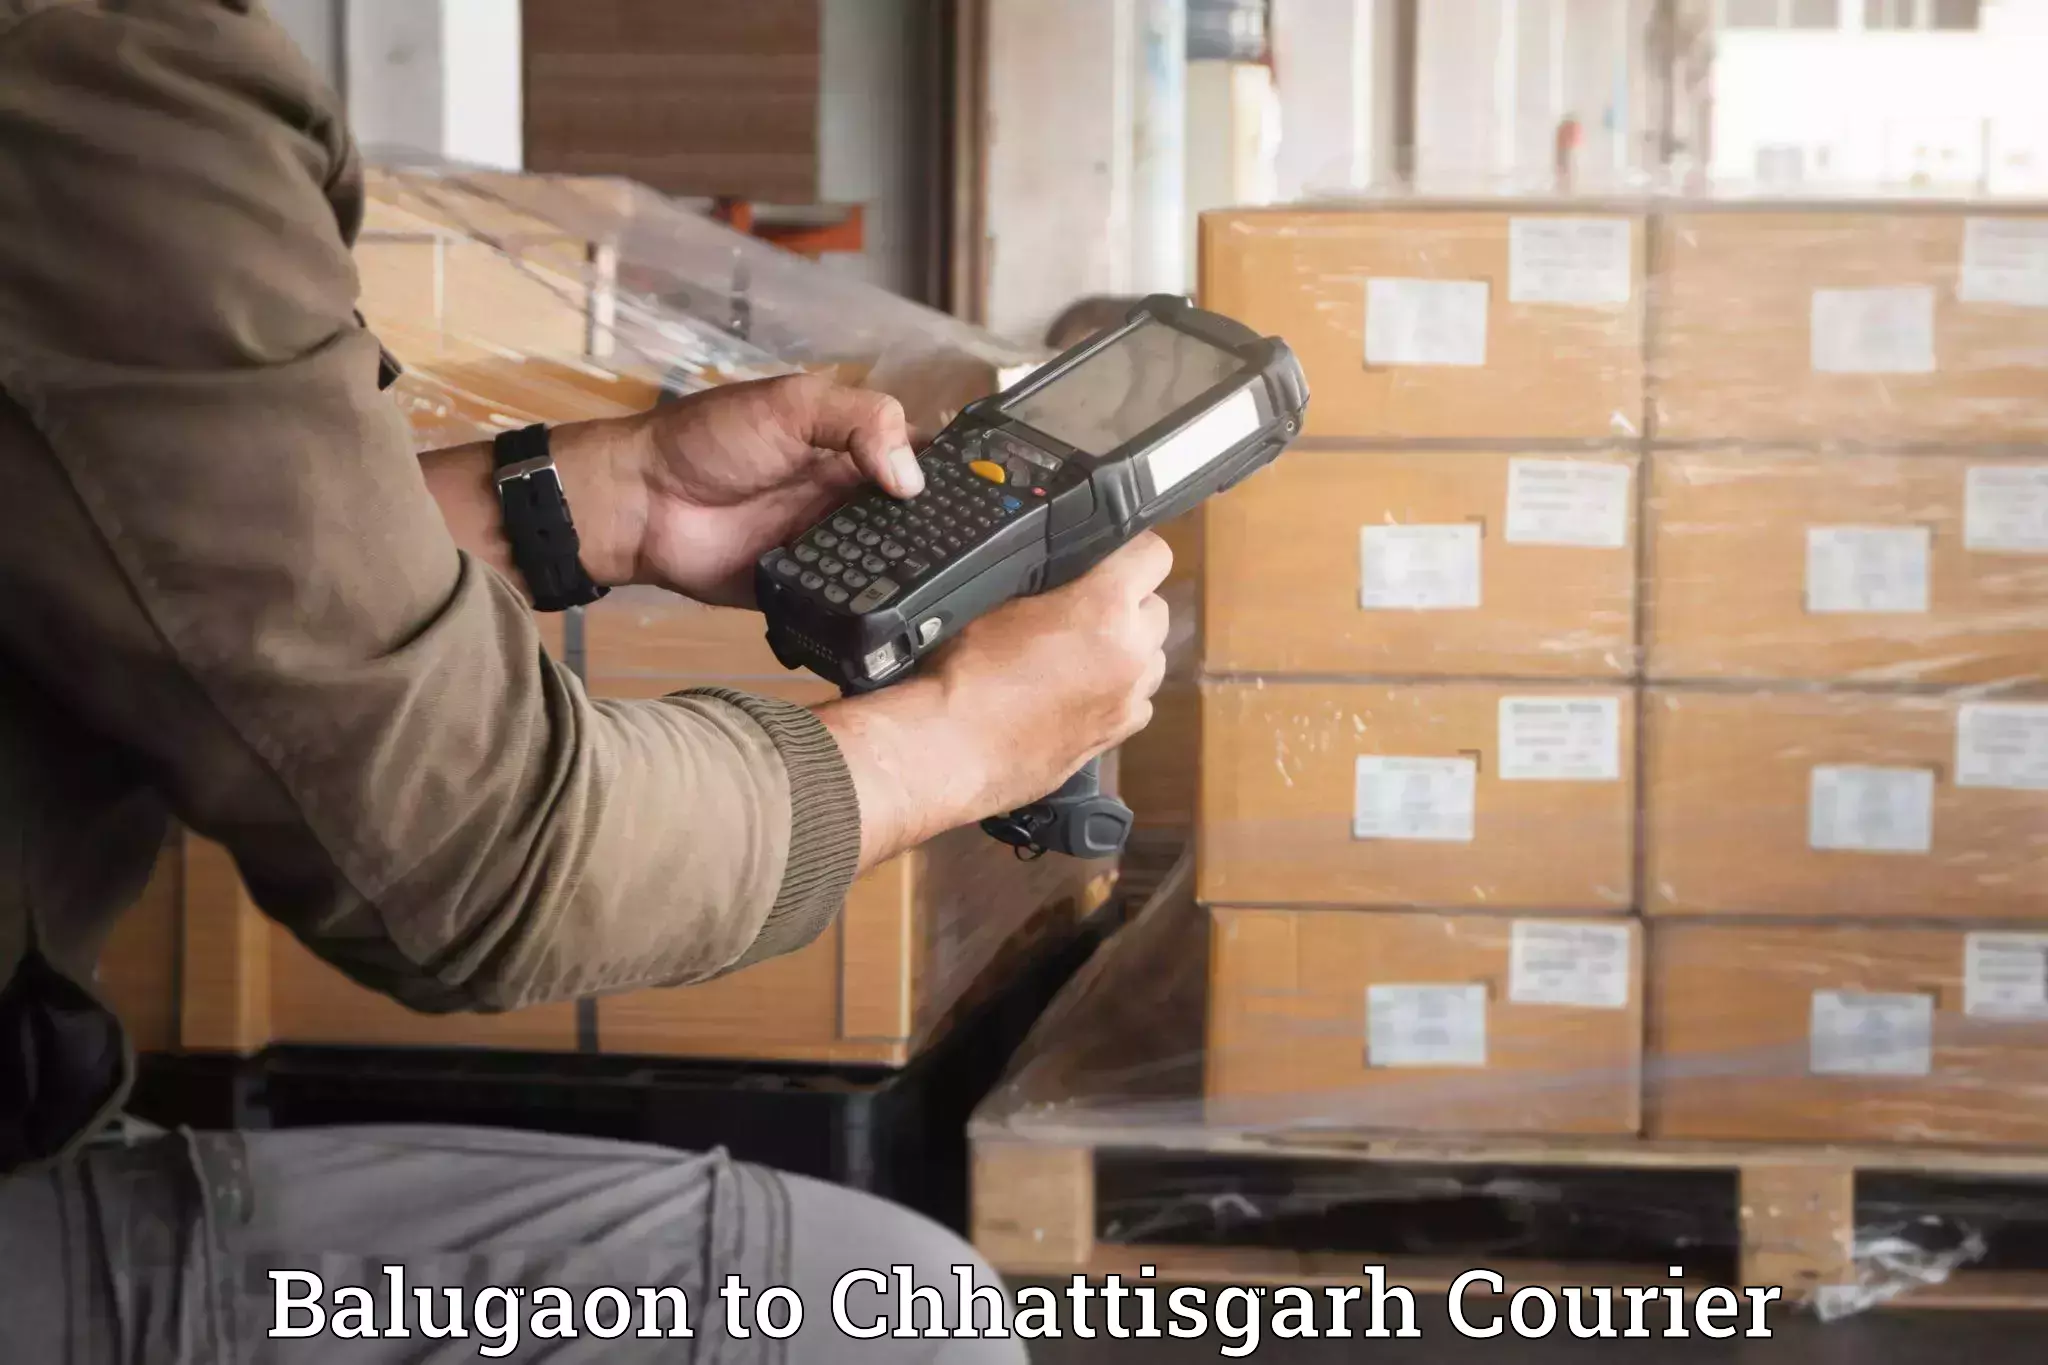 Household moving experts Balugaon to Pathalgaon